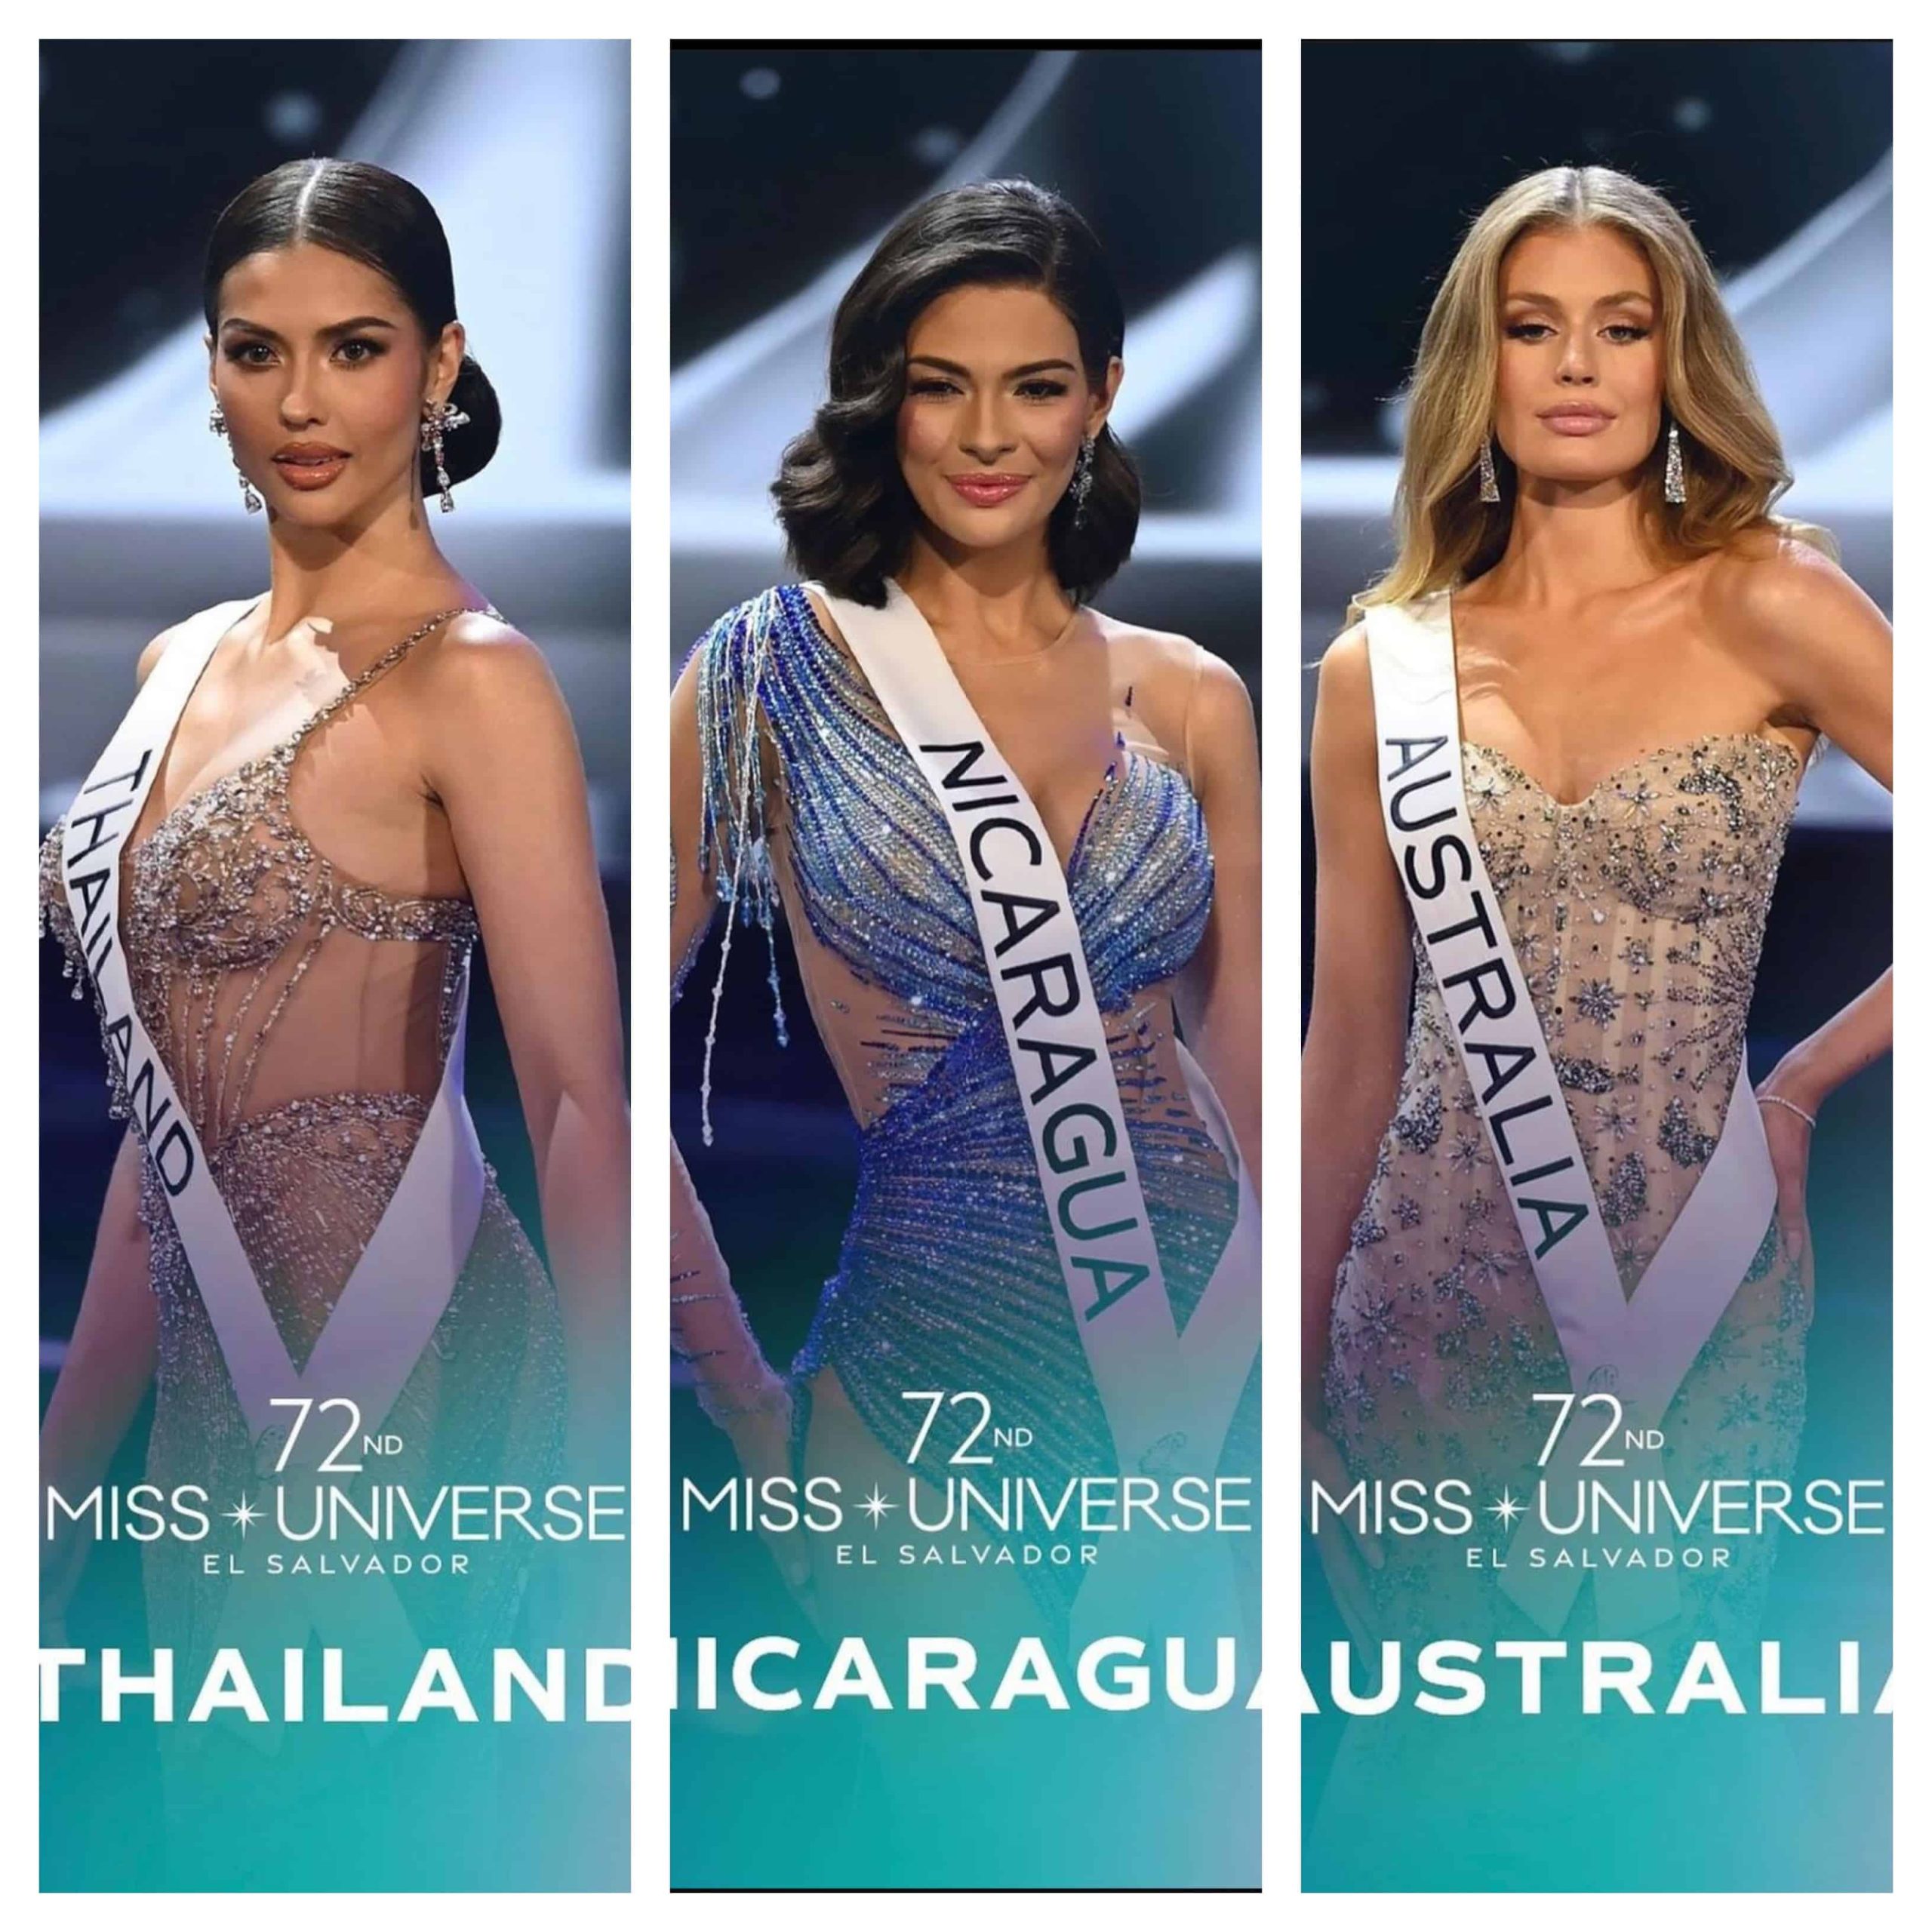 Nicaragua entre las tres finalistas a Miss Universo, con Australia y Tailandia